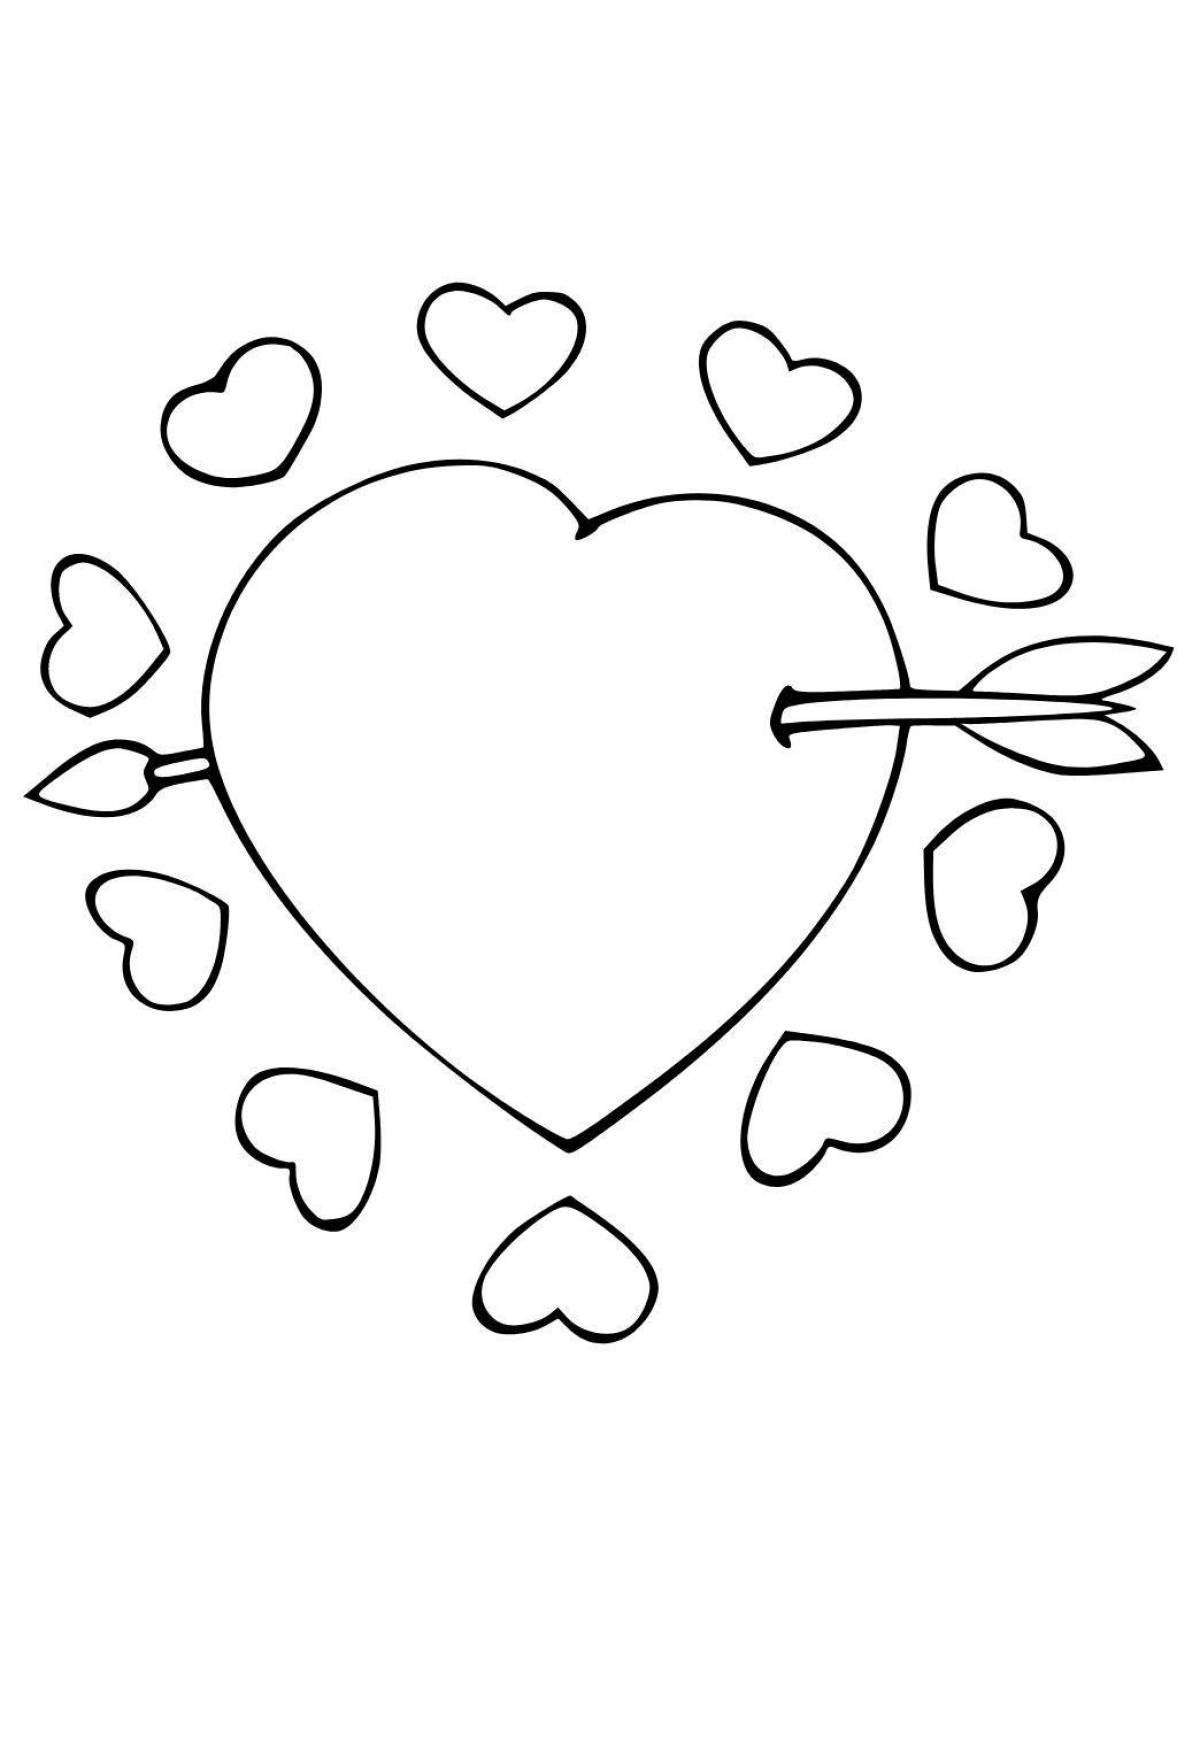 Восхитительная страница раскраски сердца для детей 5-6 лет